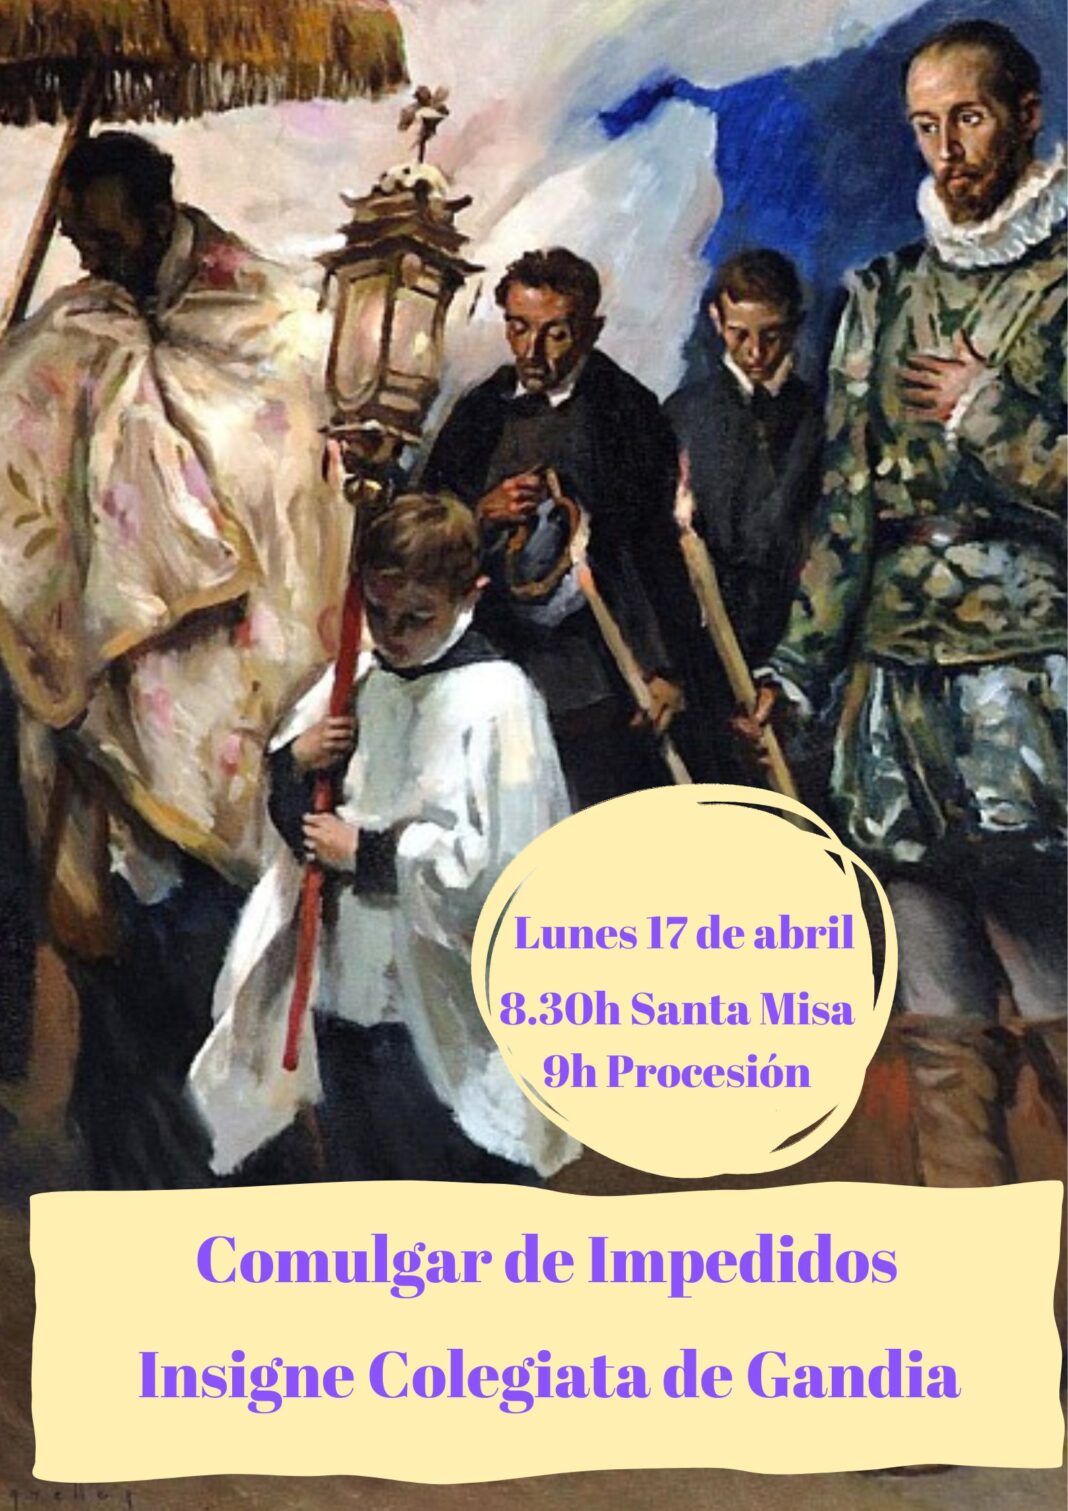 La Colegiata de Gandía celebrará la procesión de Comulgar de Impedidos ligada a San Vicent y a Francisco de Borja